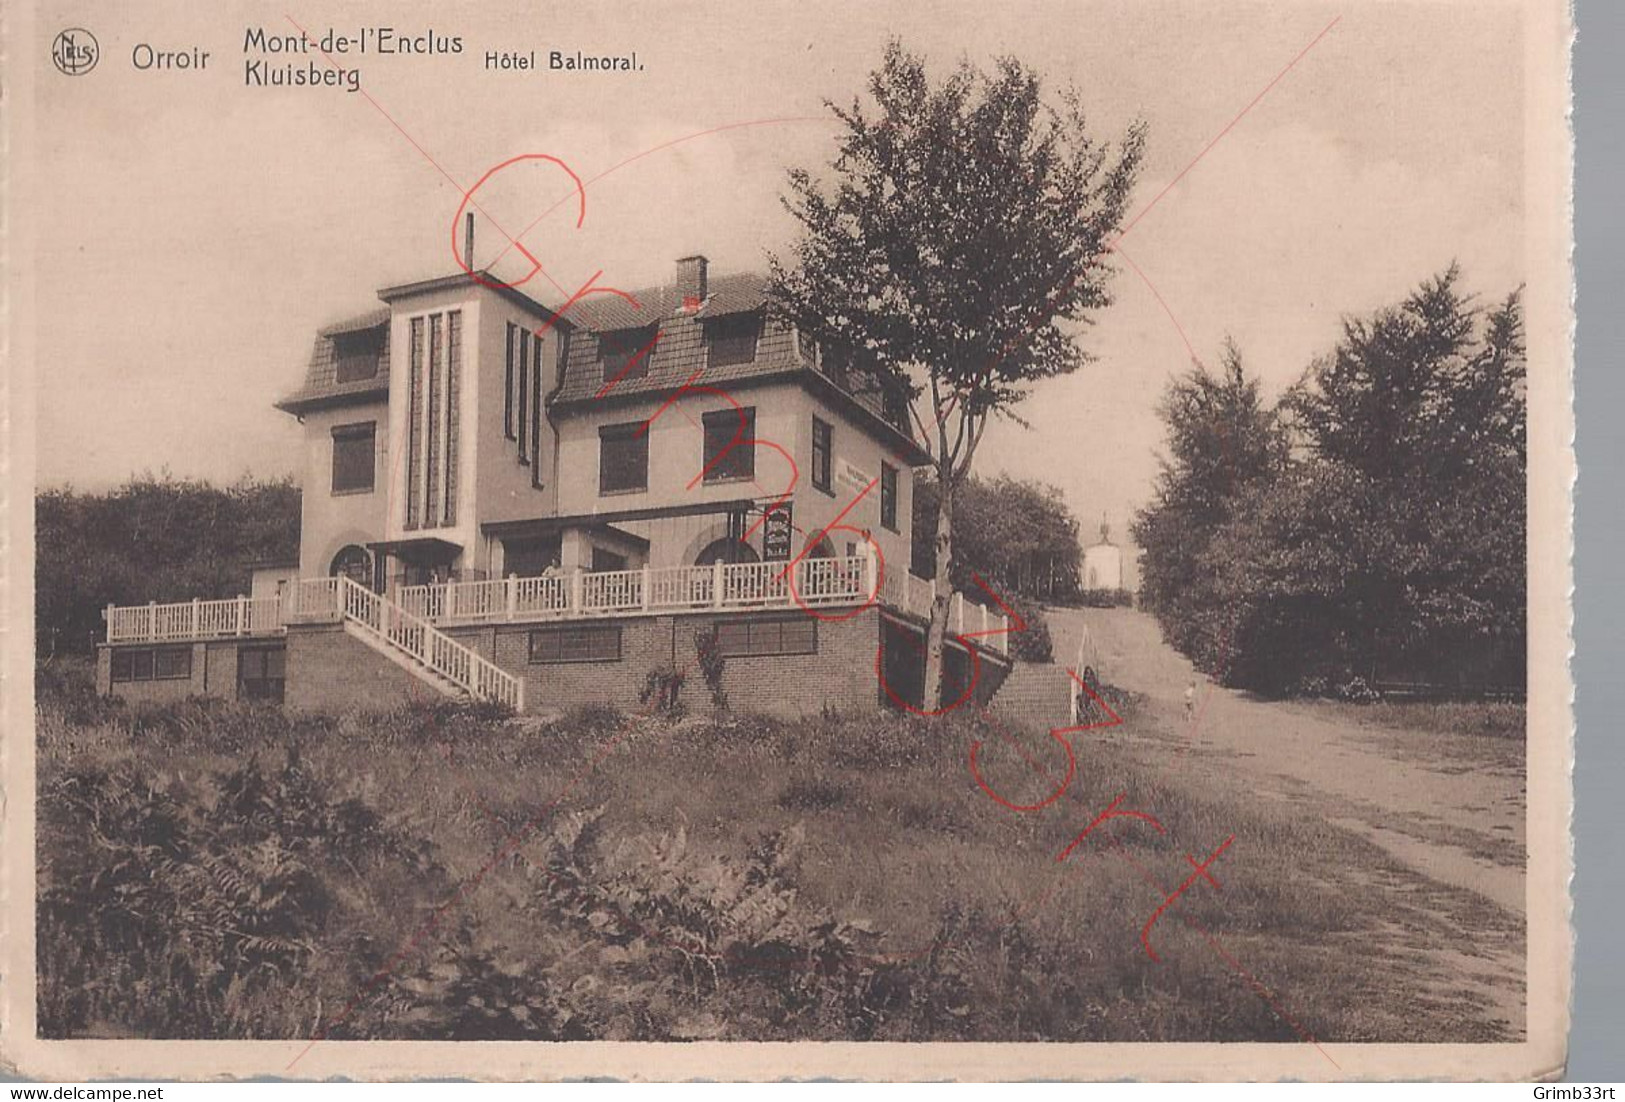 Orroir - Hôtel Balmoral - Postkaart - Mont-de-l'Enclus